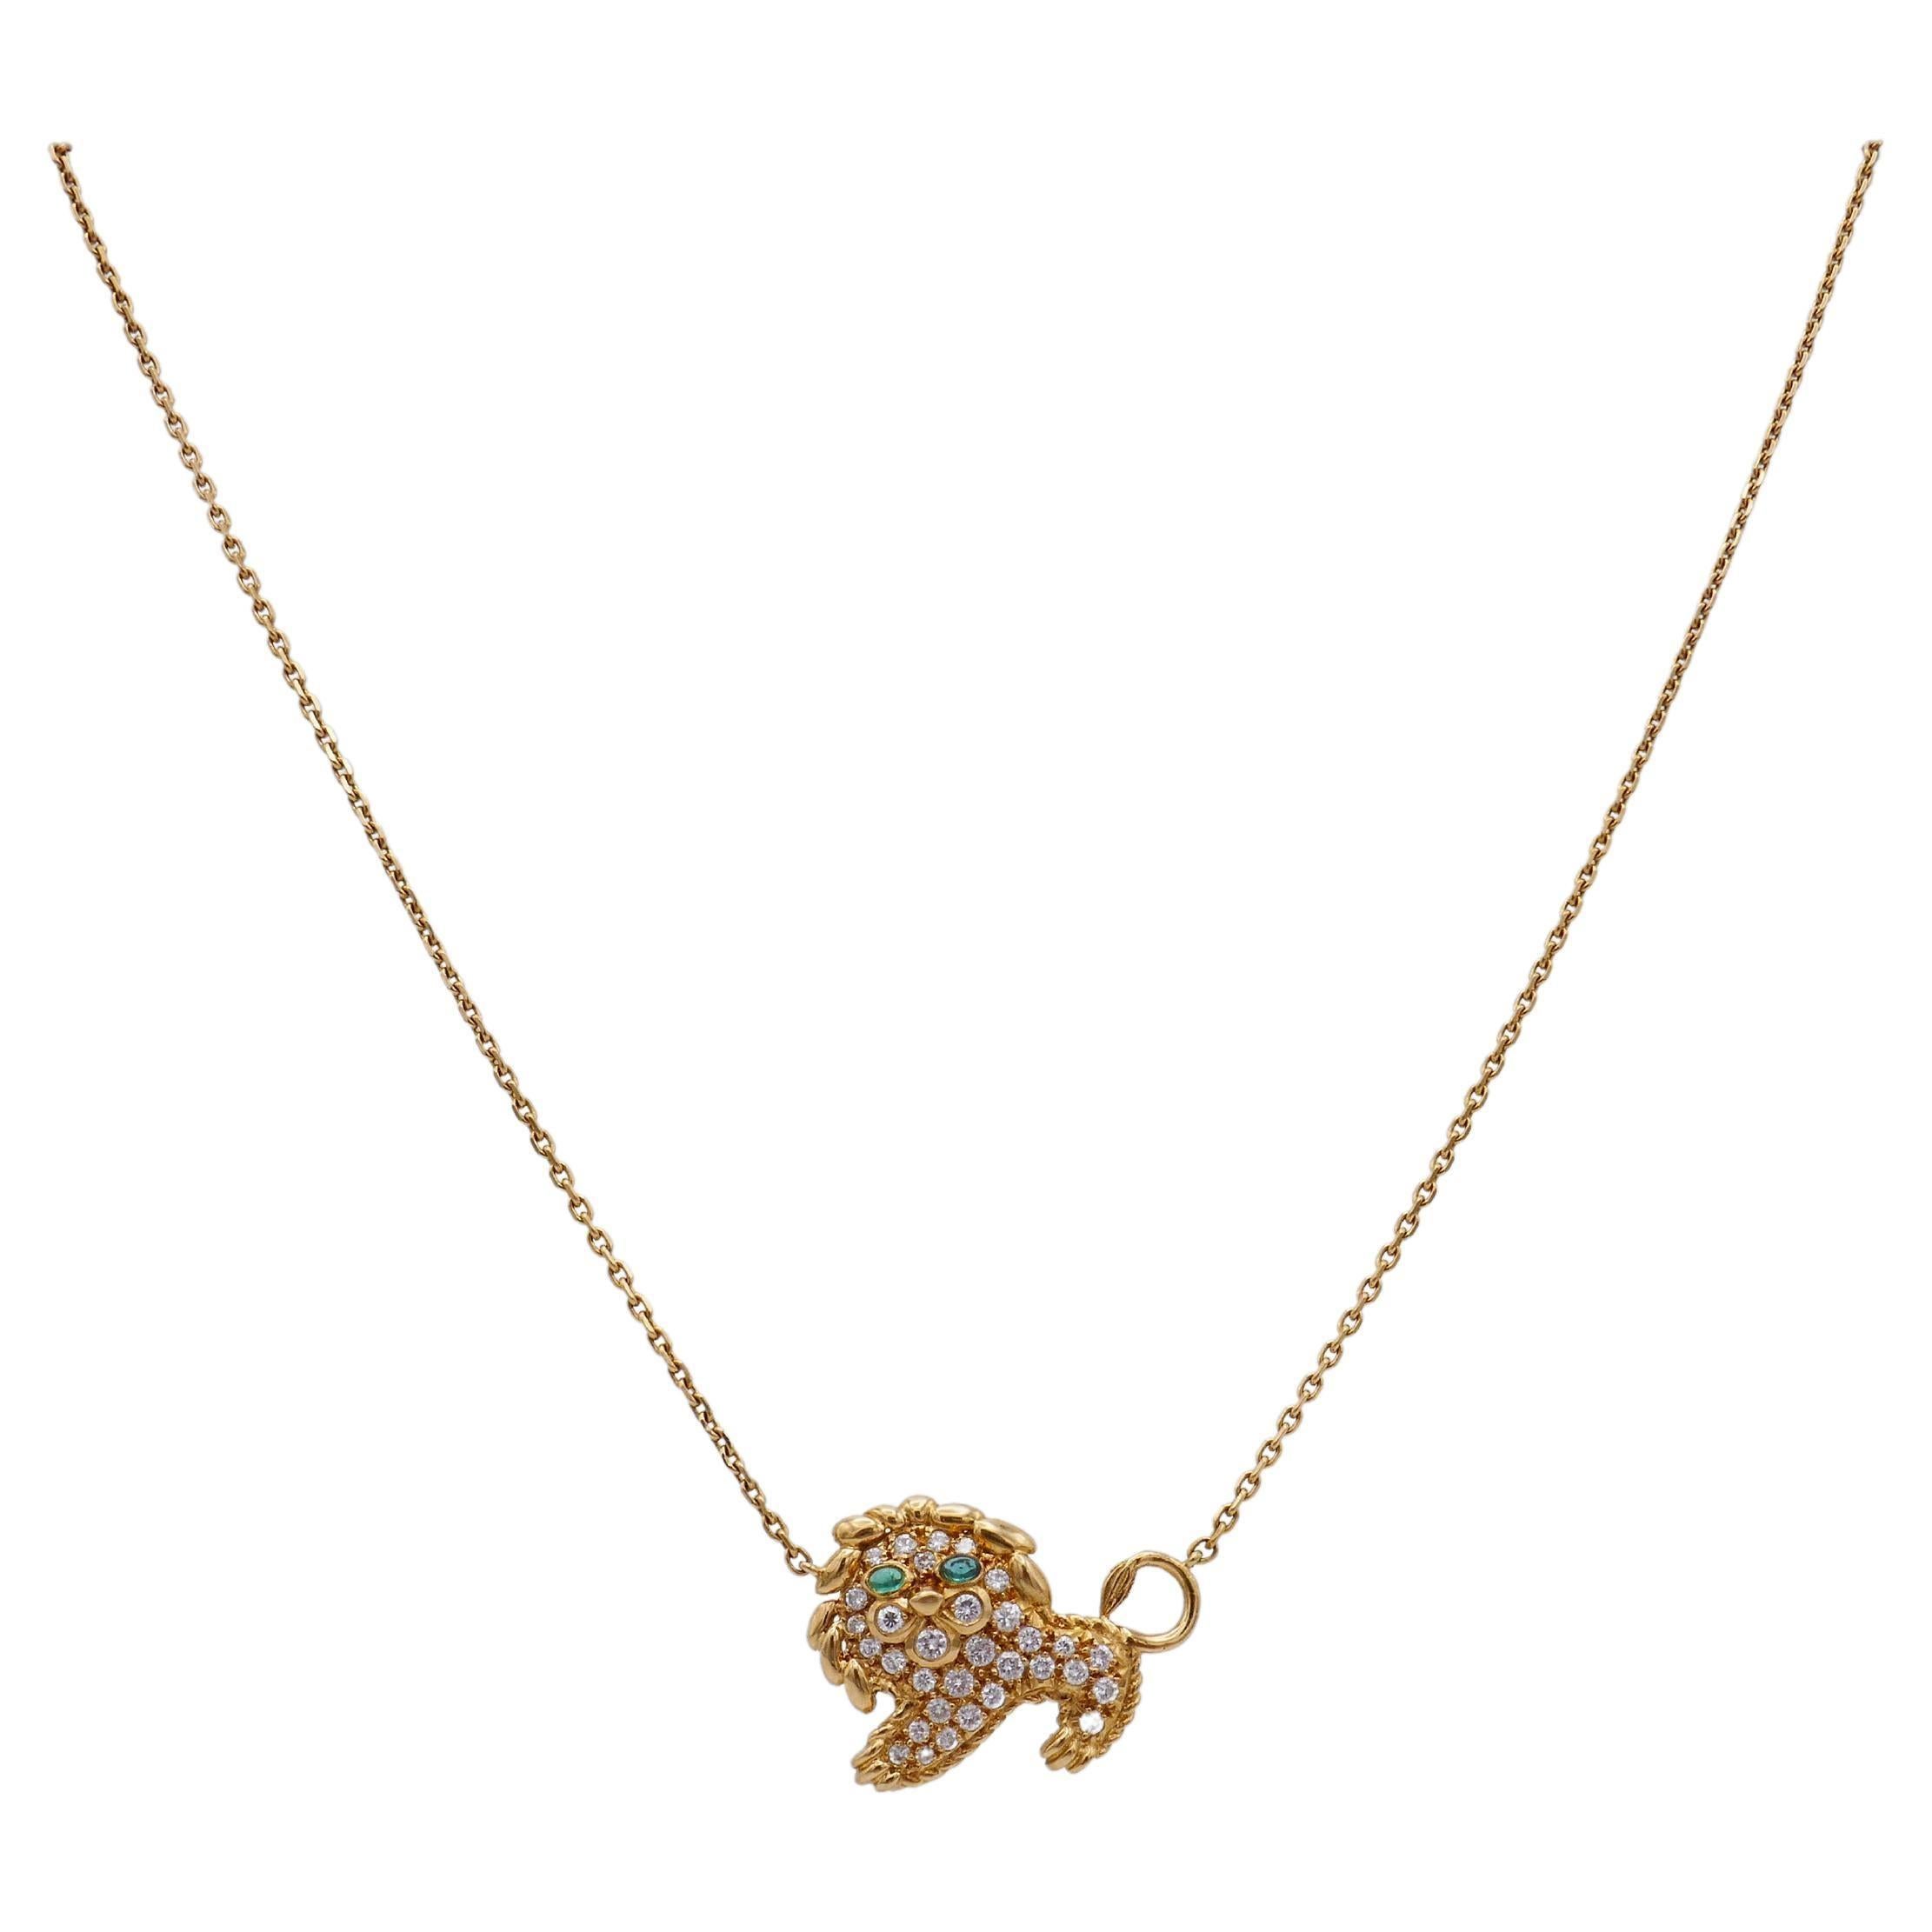 Un délicat et joli collier Leo en or de Fred Paris. 
Fabriqué en or jaune 18 carats, le collier comporte un pendentif en forme de lion attaché à une chaîne à maillons câblés. 
Le pendentif est serti de ~1,50 carats de diamants ronds brillants sertis